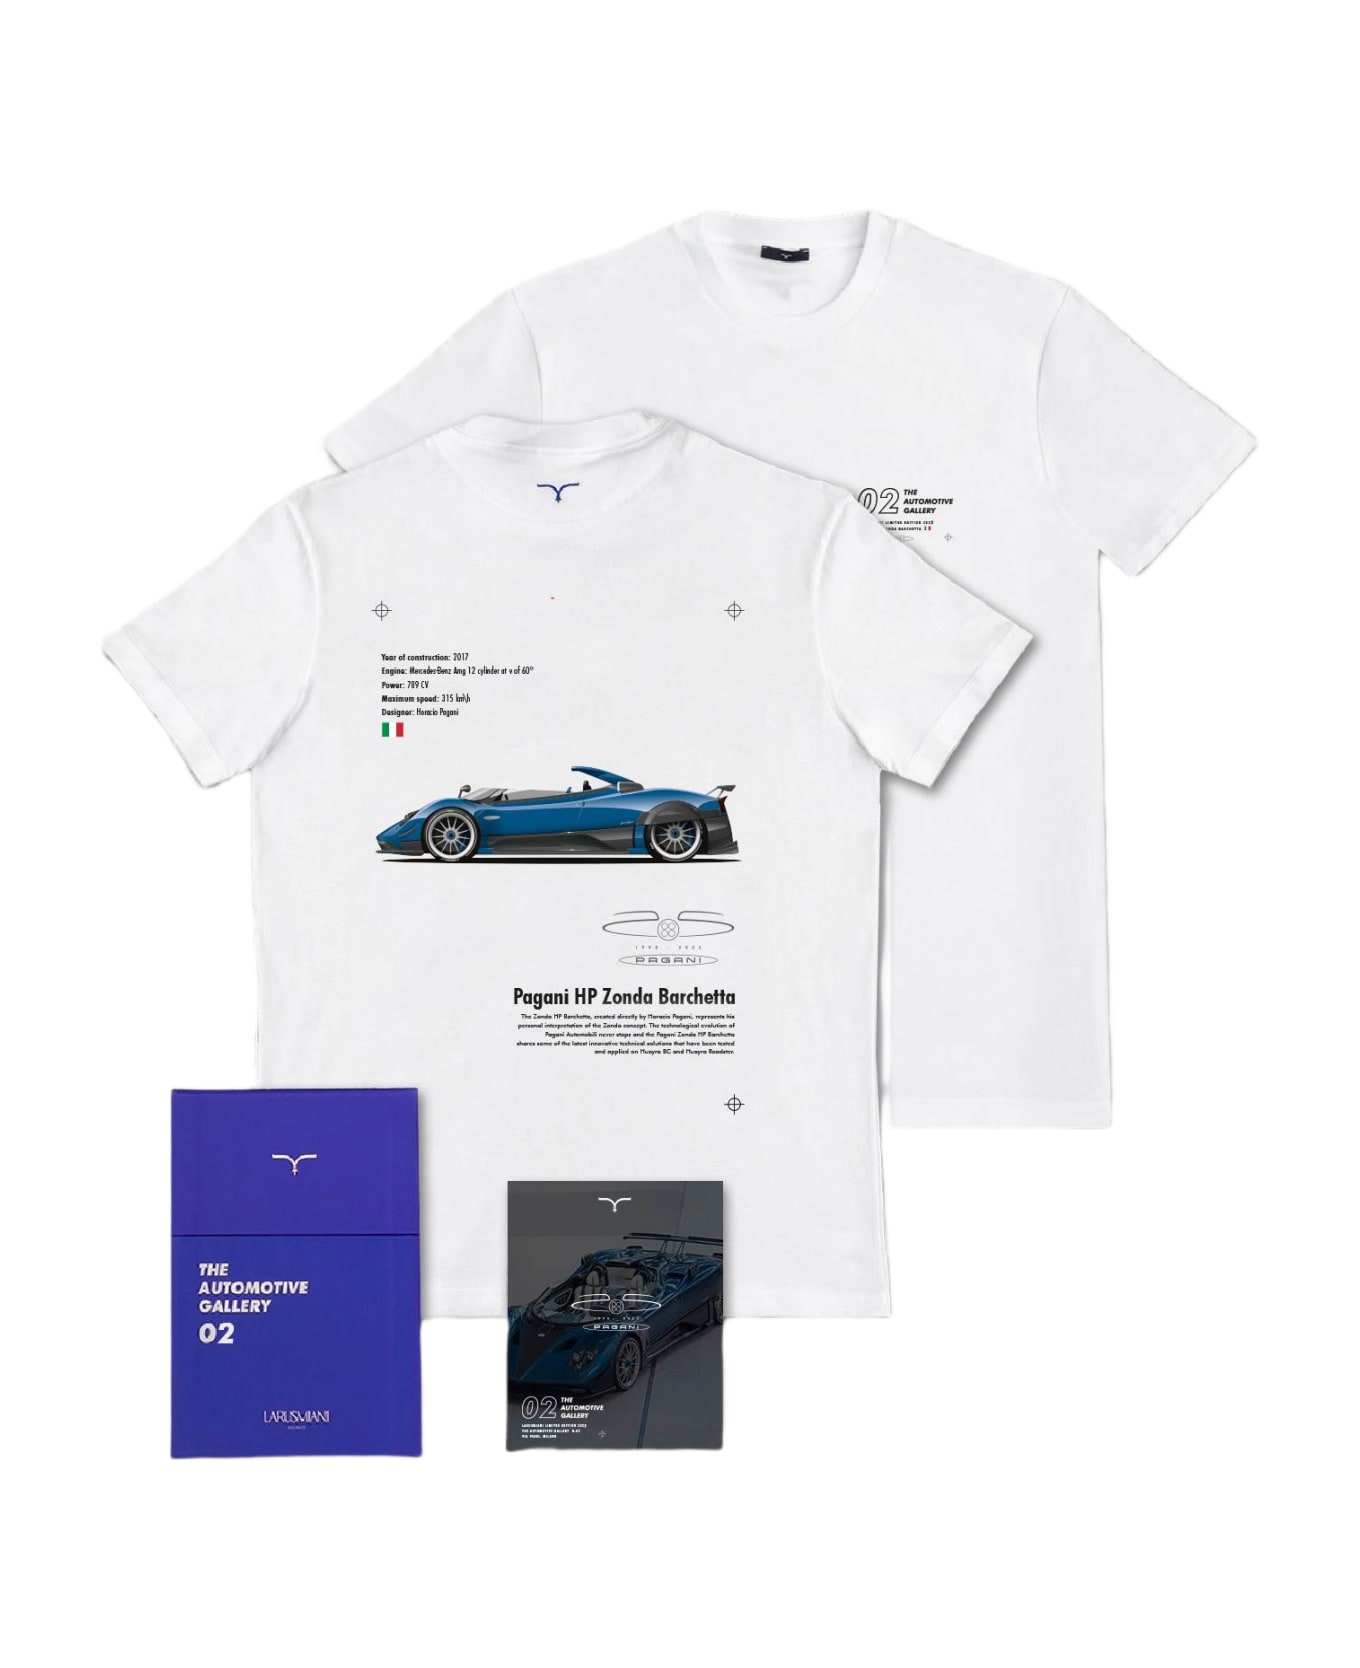 Larusmiani The Automotive Gallery - 02. Pagani Hp Barchetta T-Shirt - White